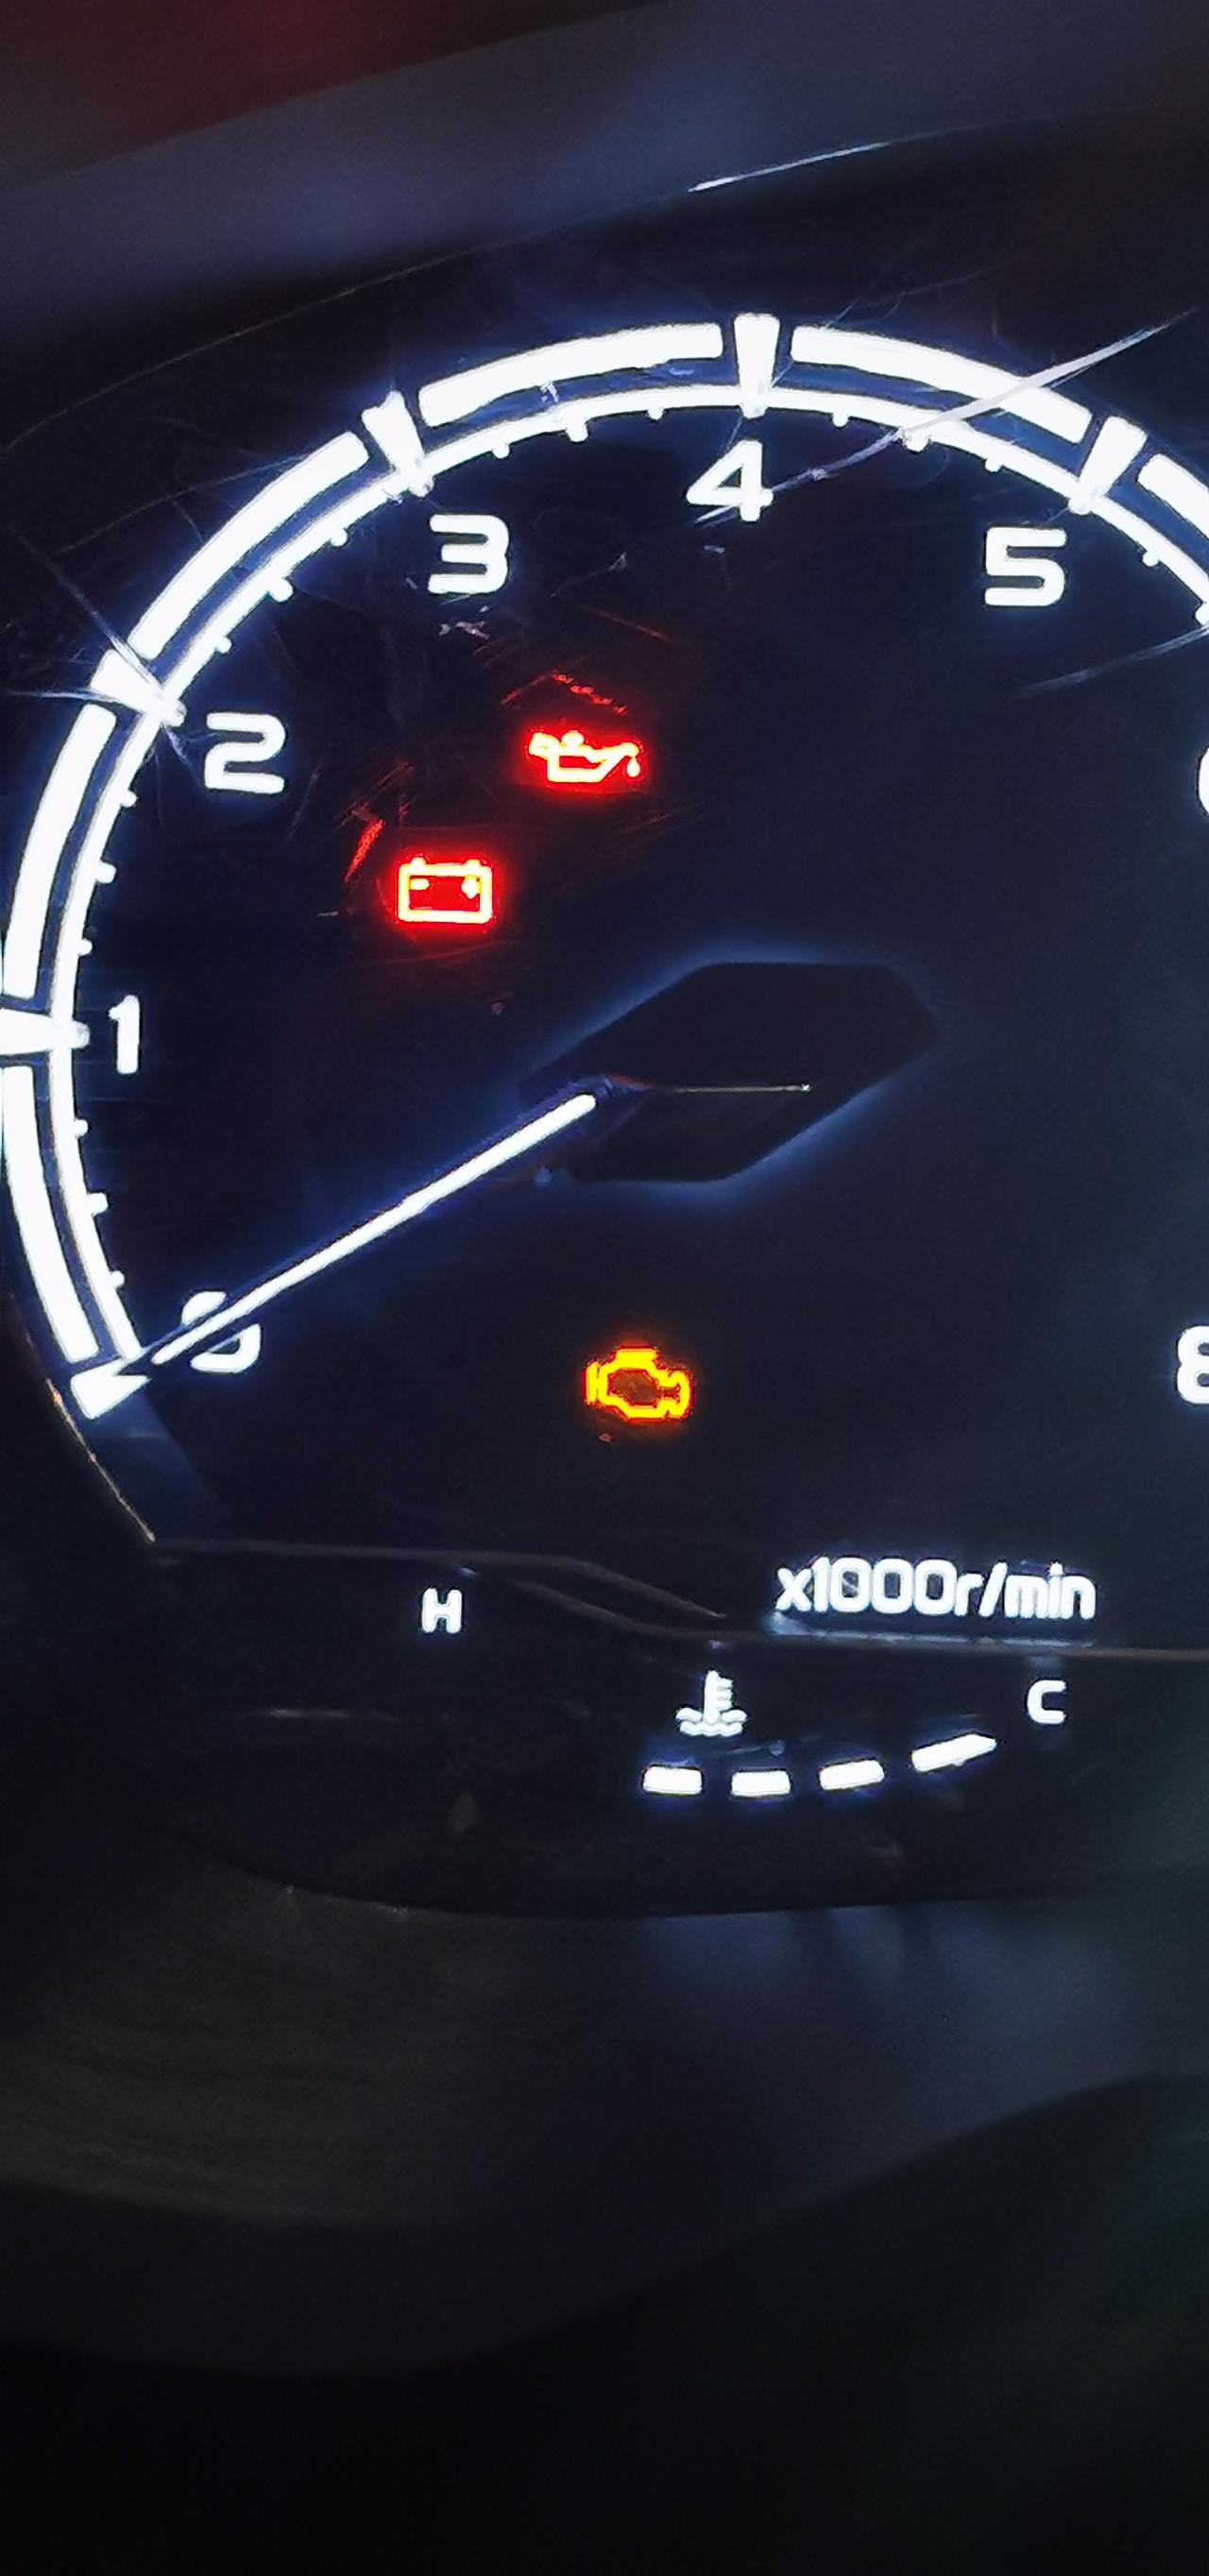 吉利远景X6 车子待机状态下亮起这几个灯 是什么问题